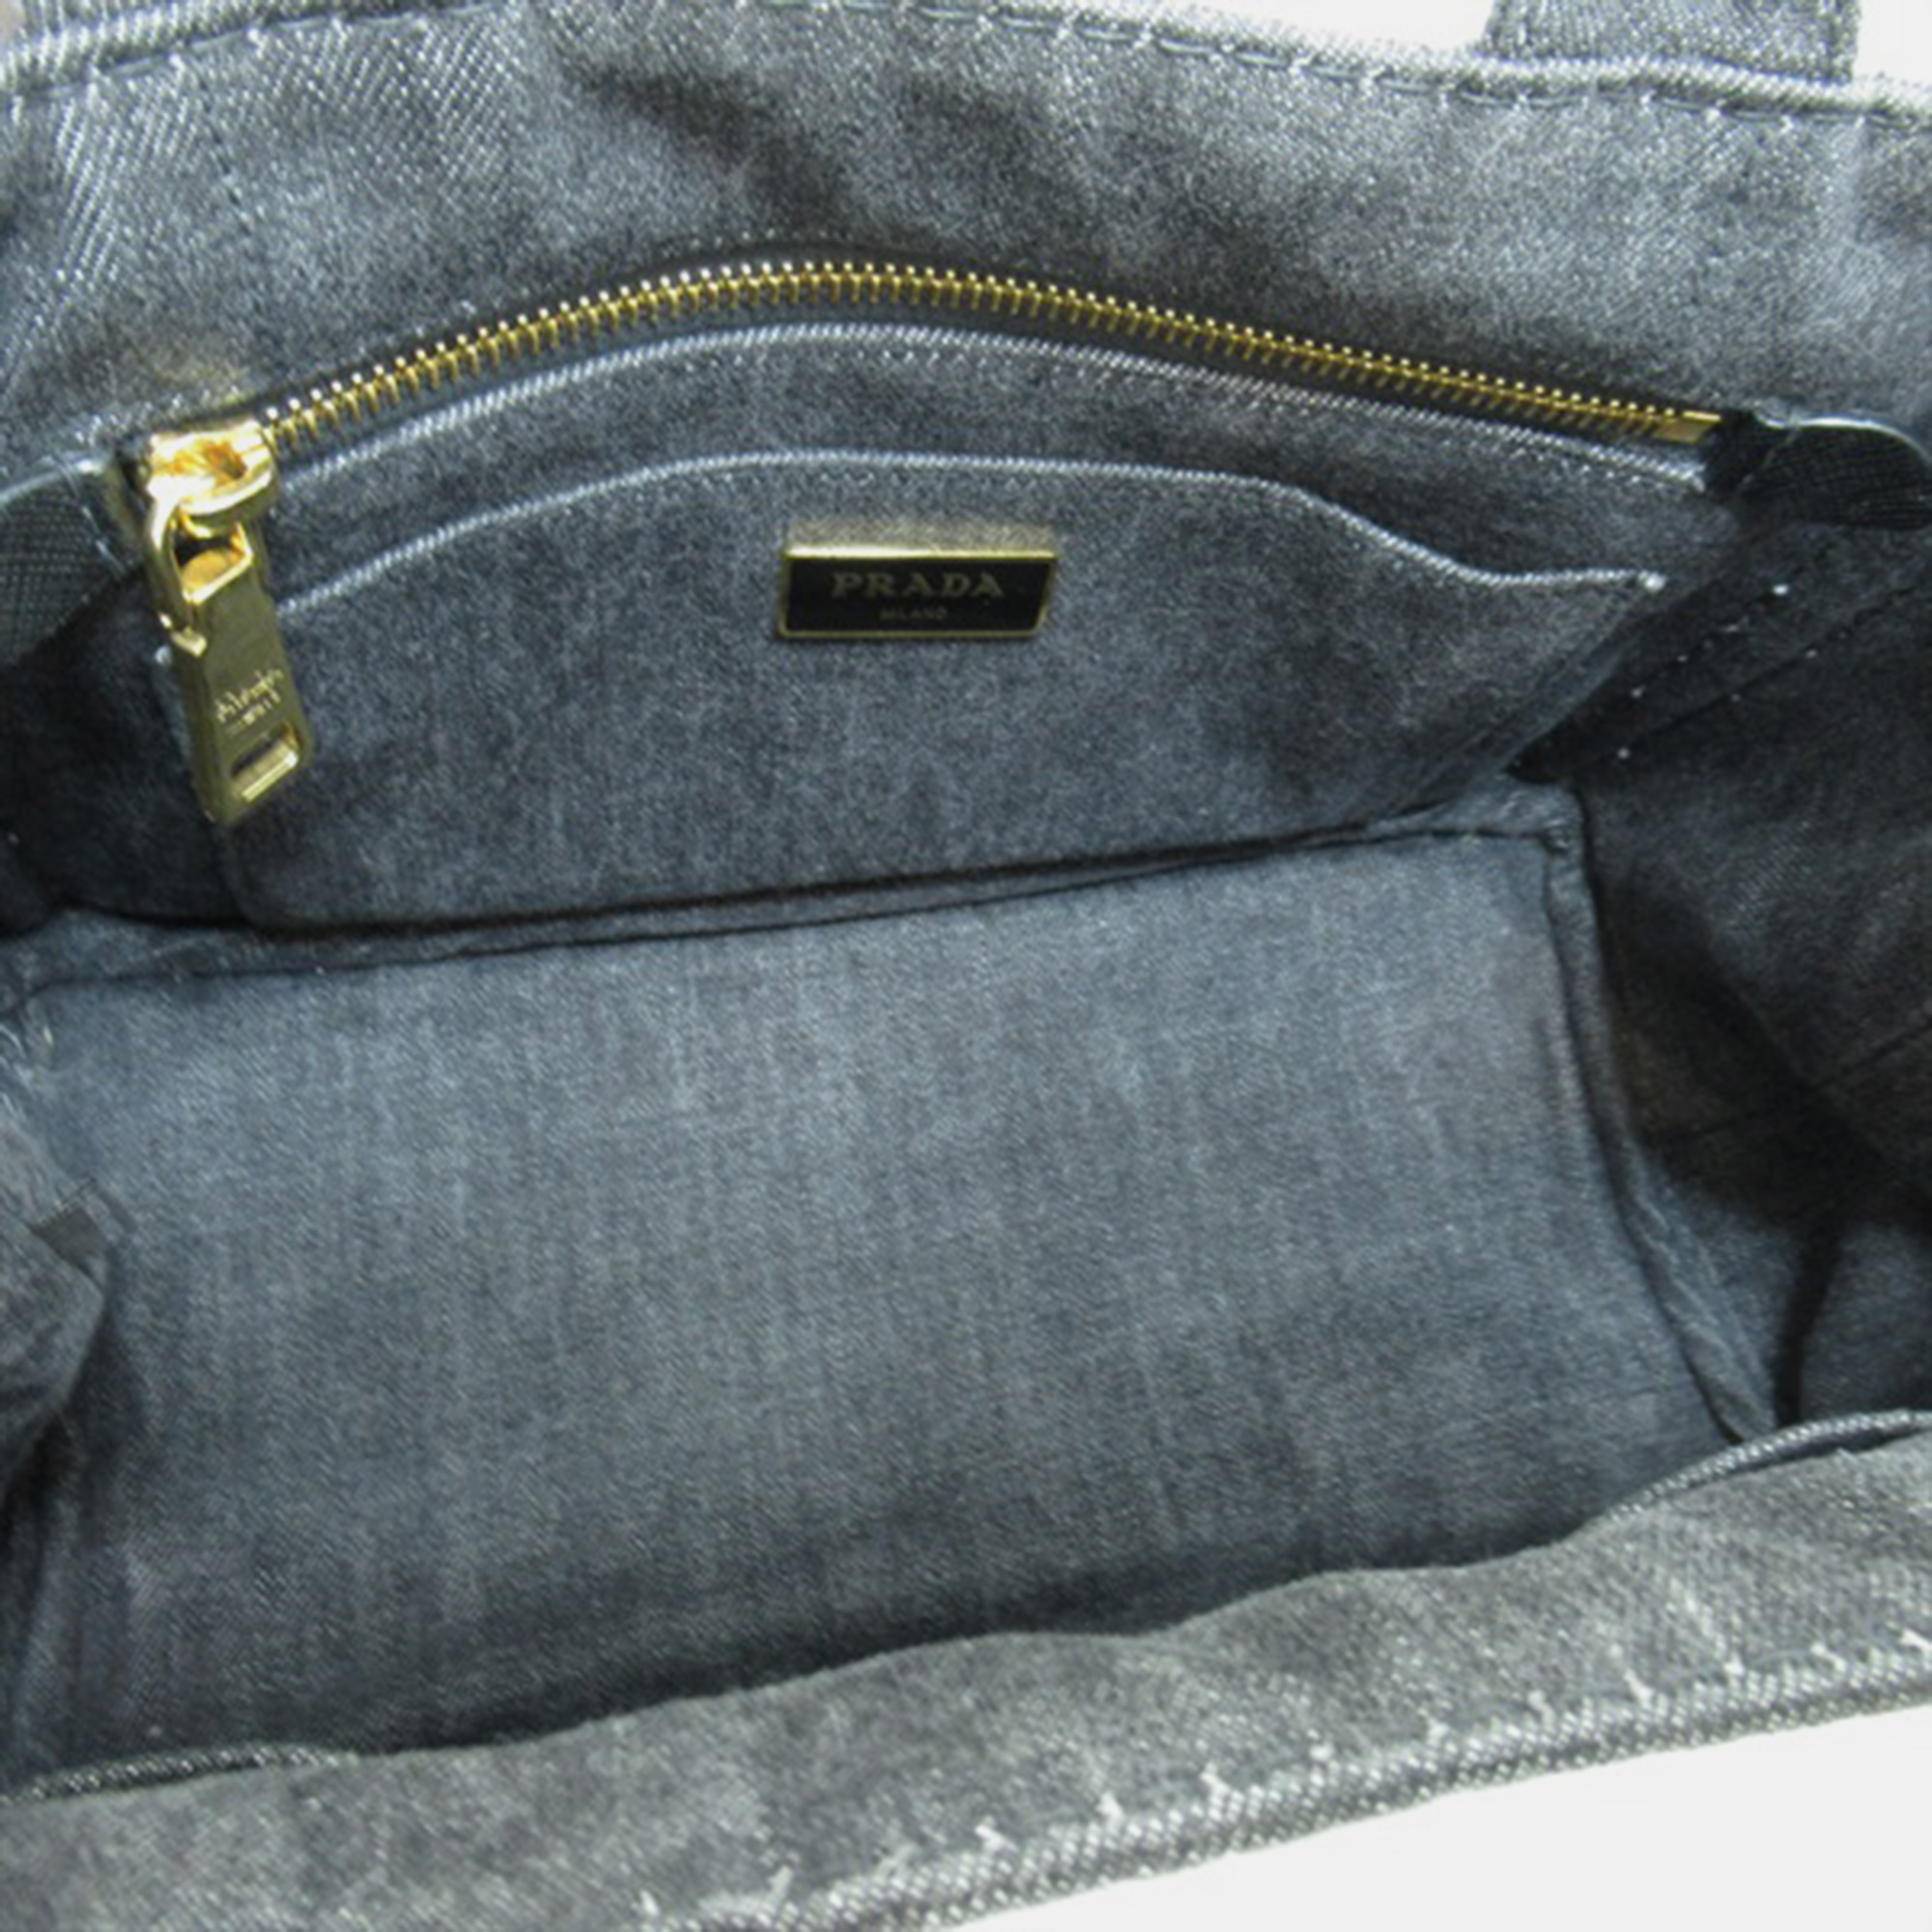 Prada Black Denim Canapa Logo Tote Bag